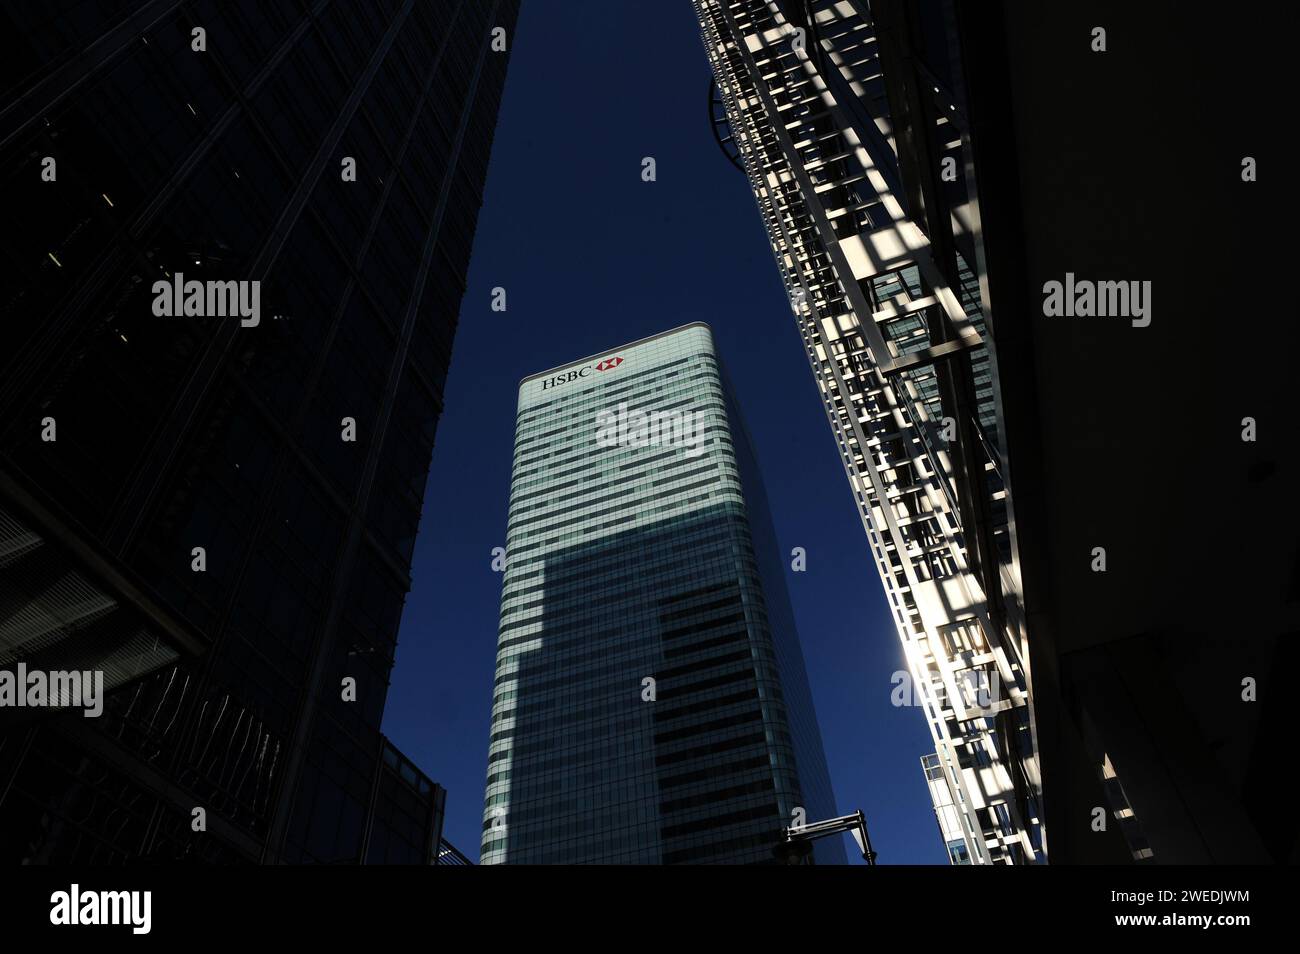 Foto del file datata 07/03/11 di una vista generale della HSBC Tower in Canada Square, Canary Wharf, Londra. Secondo una nuova analisi, le banche del Regno Unito hanno pagato quasi 14 miliardi di sterline in dividendi lo scorso anno, più di qualsiasi altro settore in quanto gli azionisti hanno incassato più denaro contante mentre i costi di indebitamento sono aumentati. HSBC ha dominato i pagamenti di dividendi nel Regno Unito oltre il 2023, società di servizi finanziari globale Computershare rilevata. Tra di loro, le banche distribuivano 13,8 miliardi di sterline in dividendi, il che significa denaro generato dai profitti assegnati agli azionisti. Data di emissione: Giovedì 25 gennaio 2024. Foto Stock